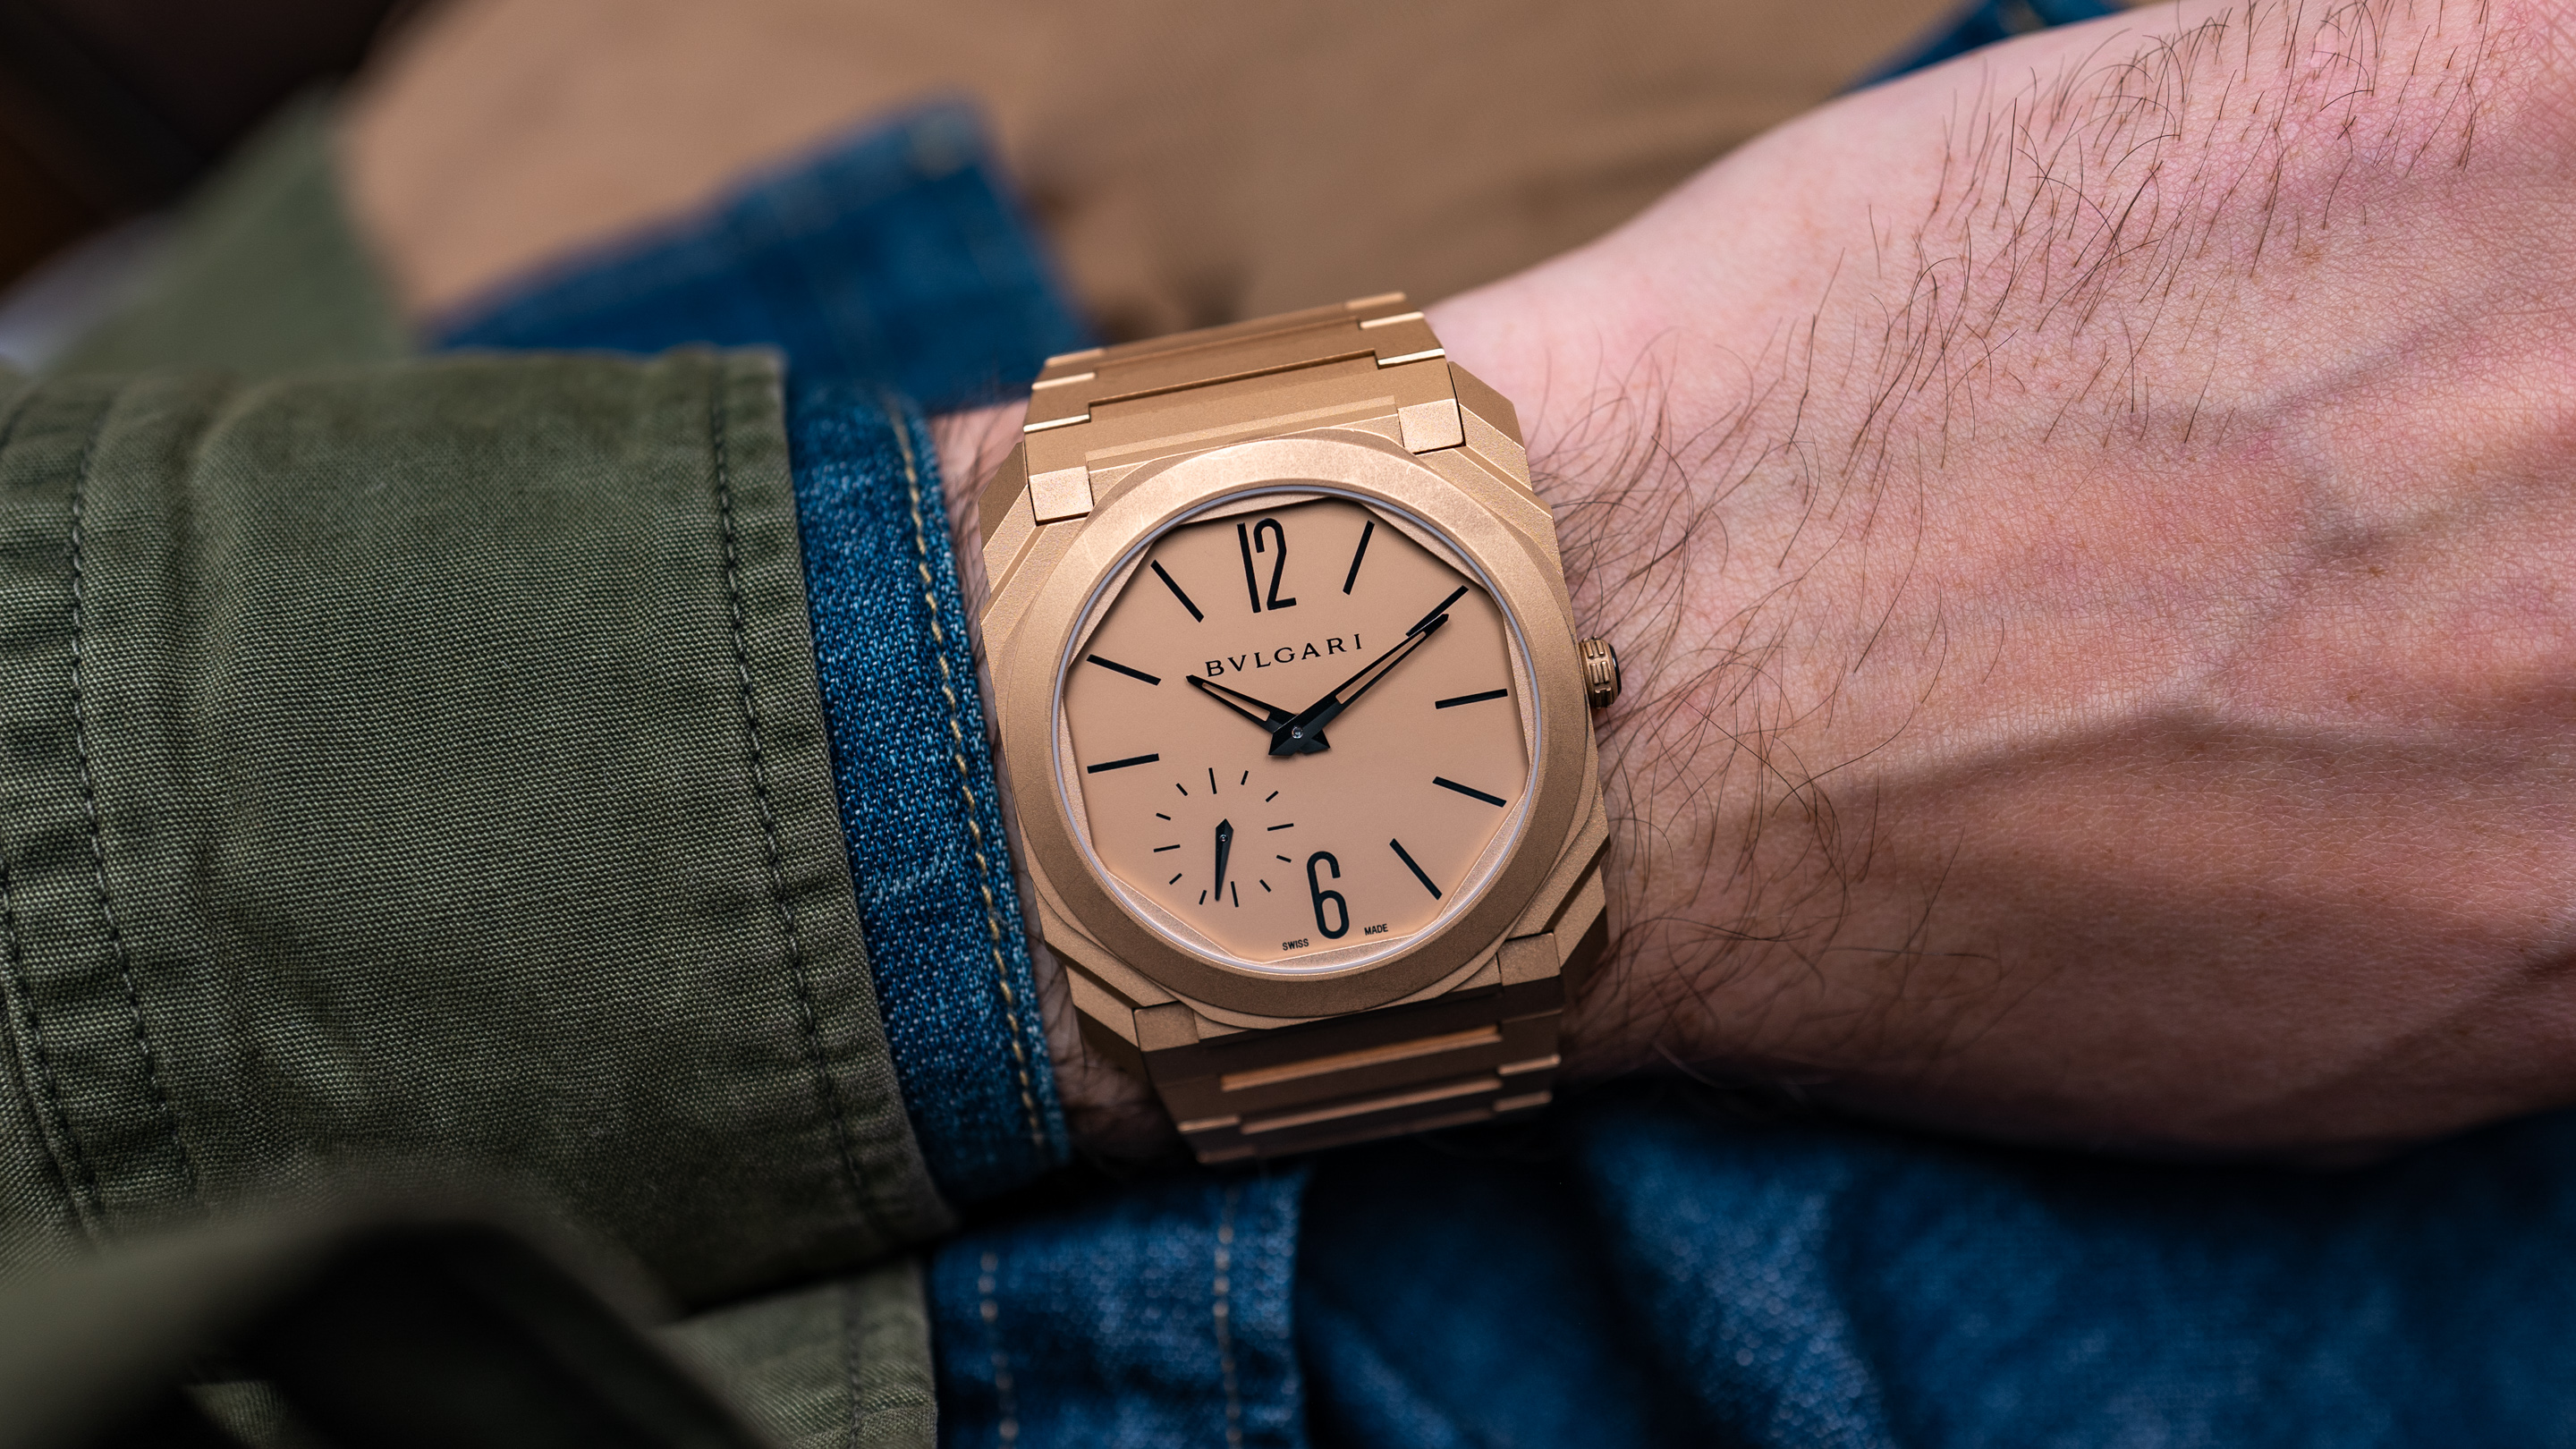 bvlgari wrist watches prices